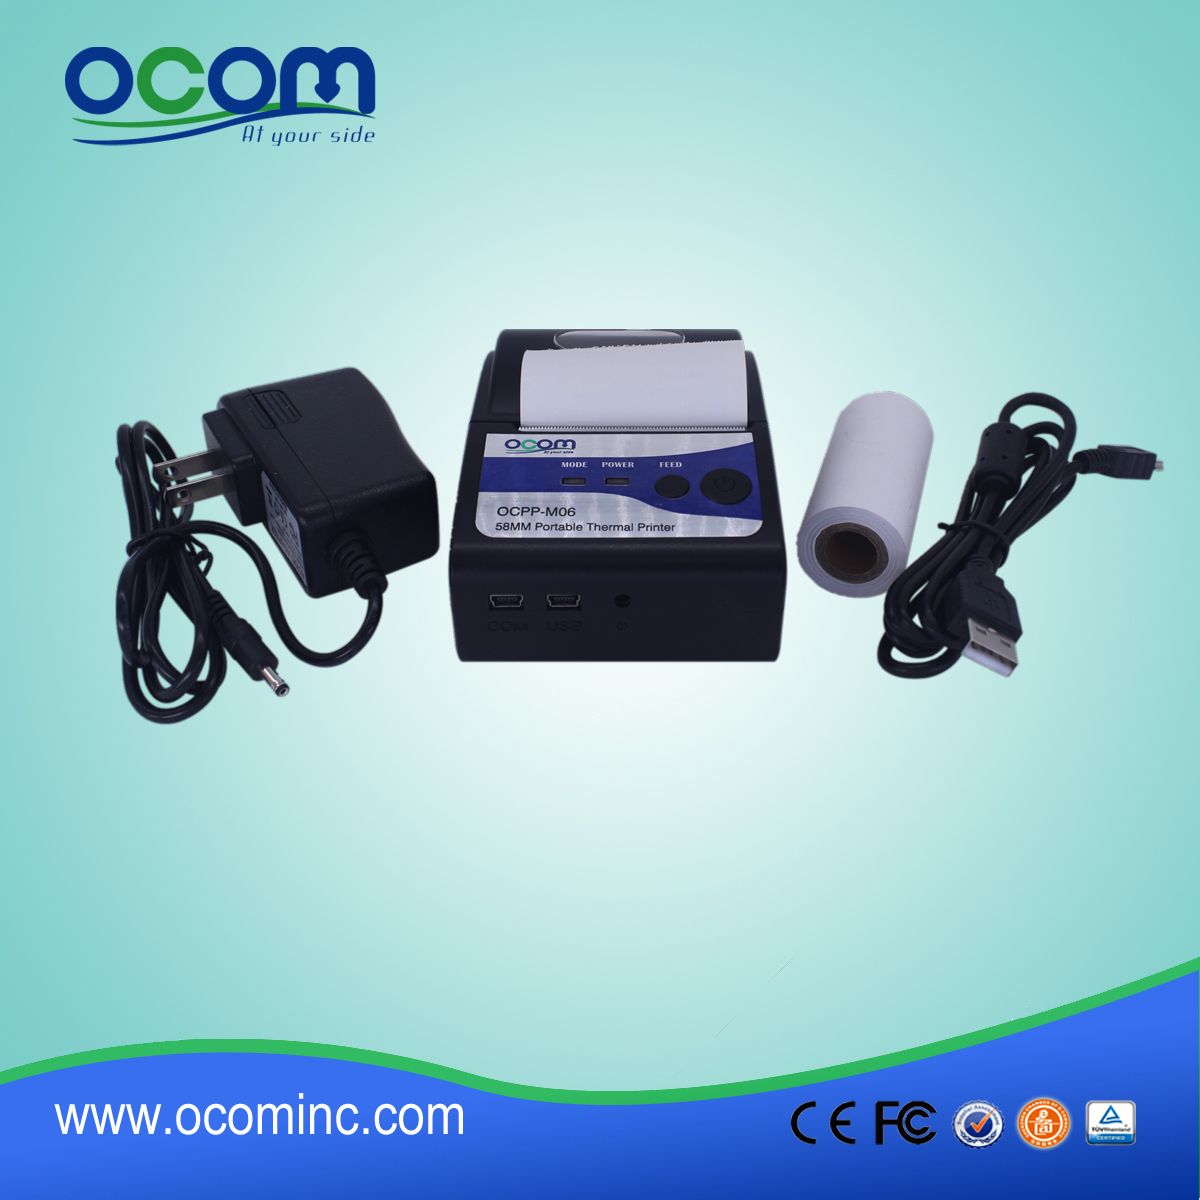 (OCPP-M06) OCOM Hot vender impressora térmica android, rs232 impressora térmica